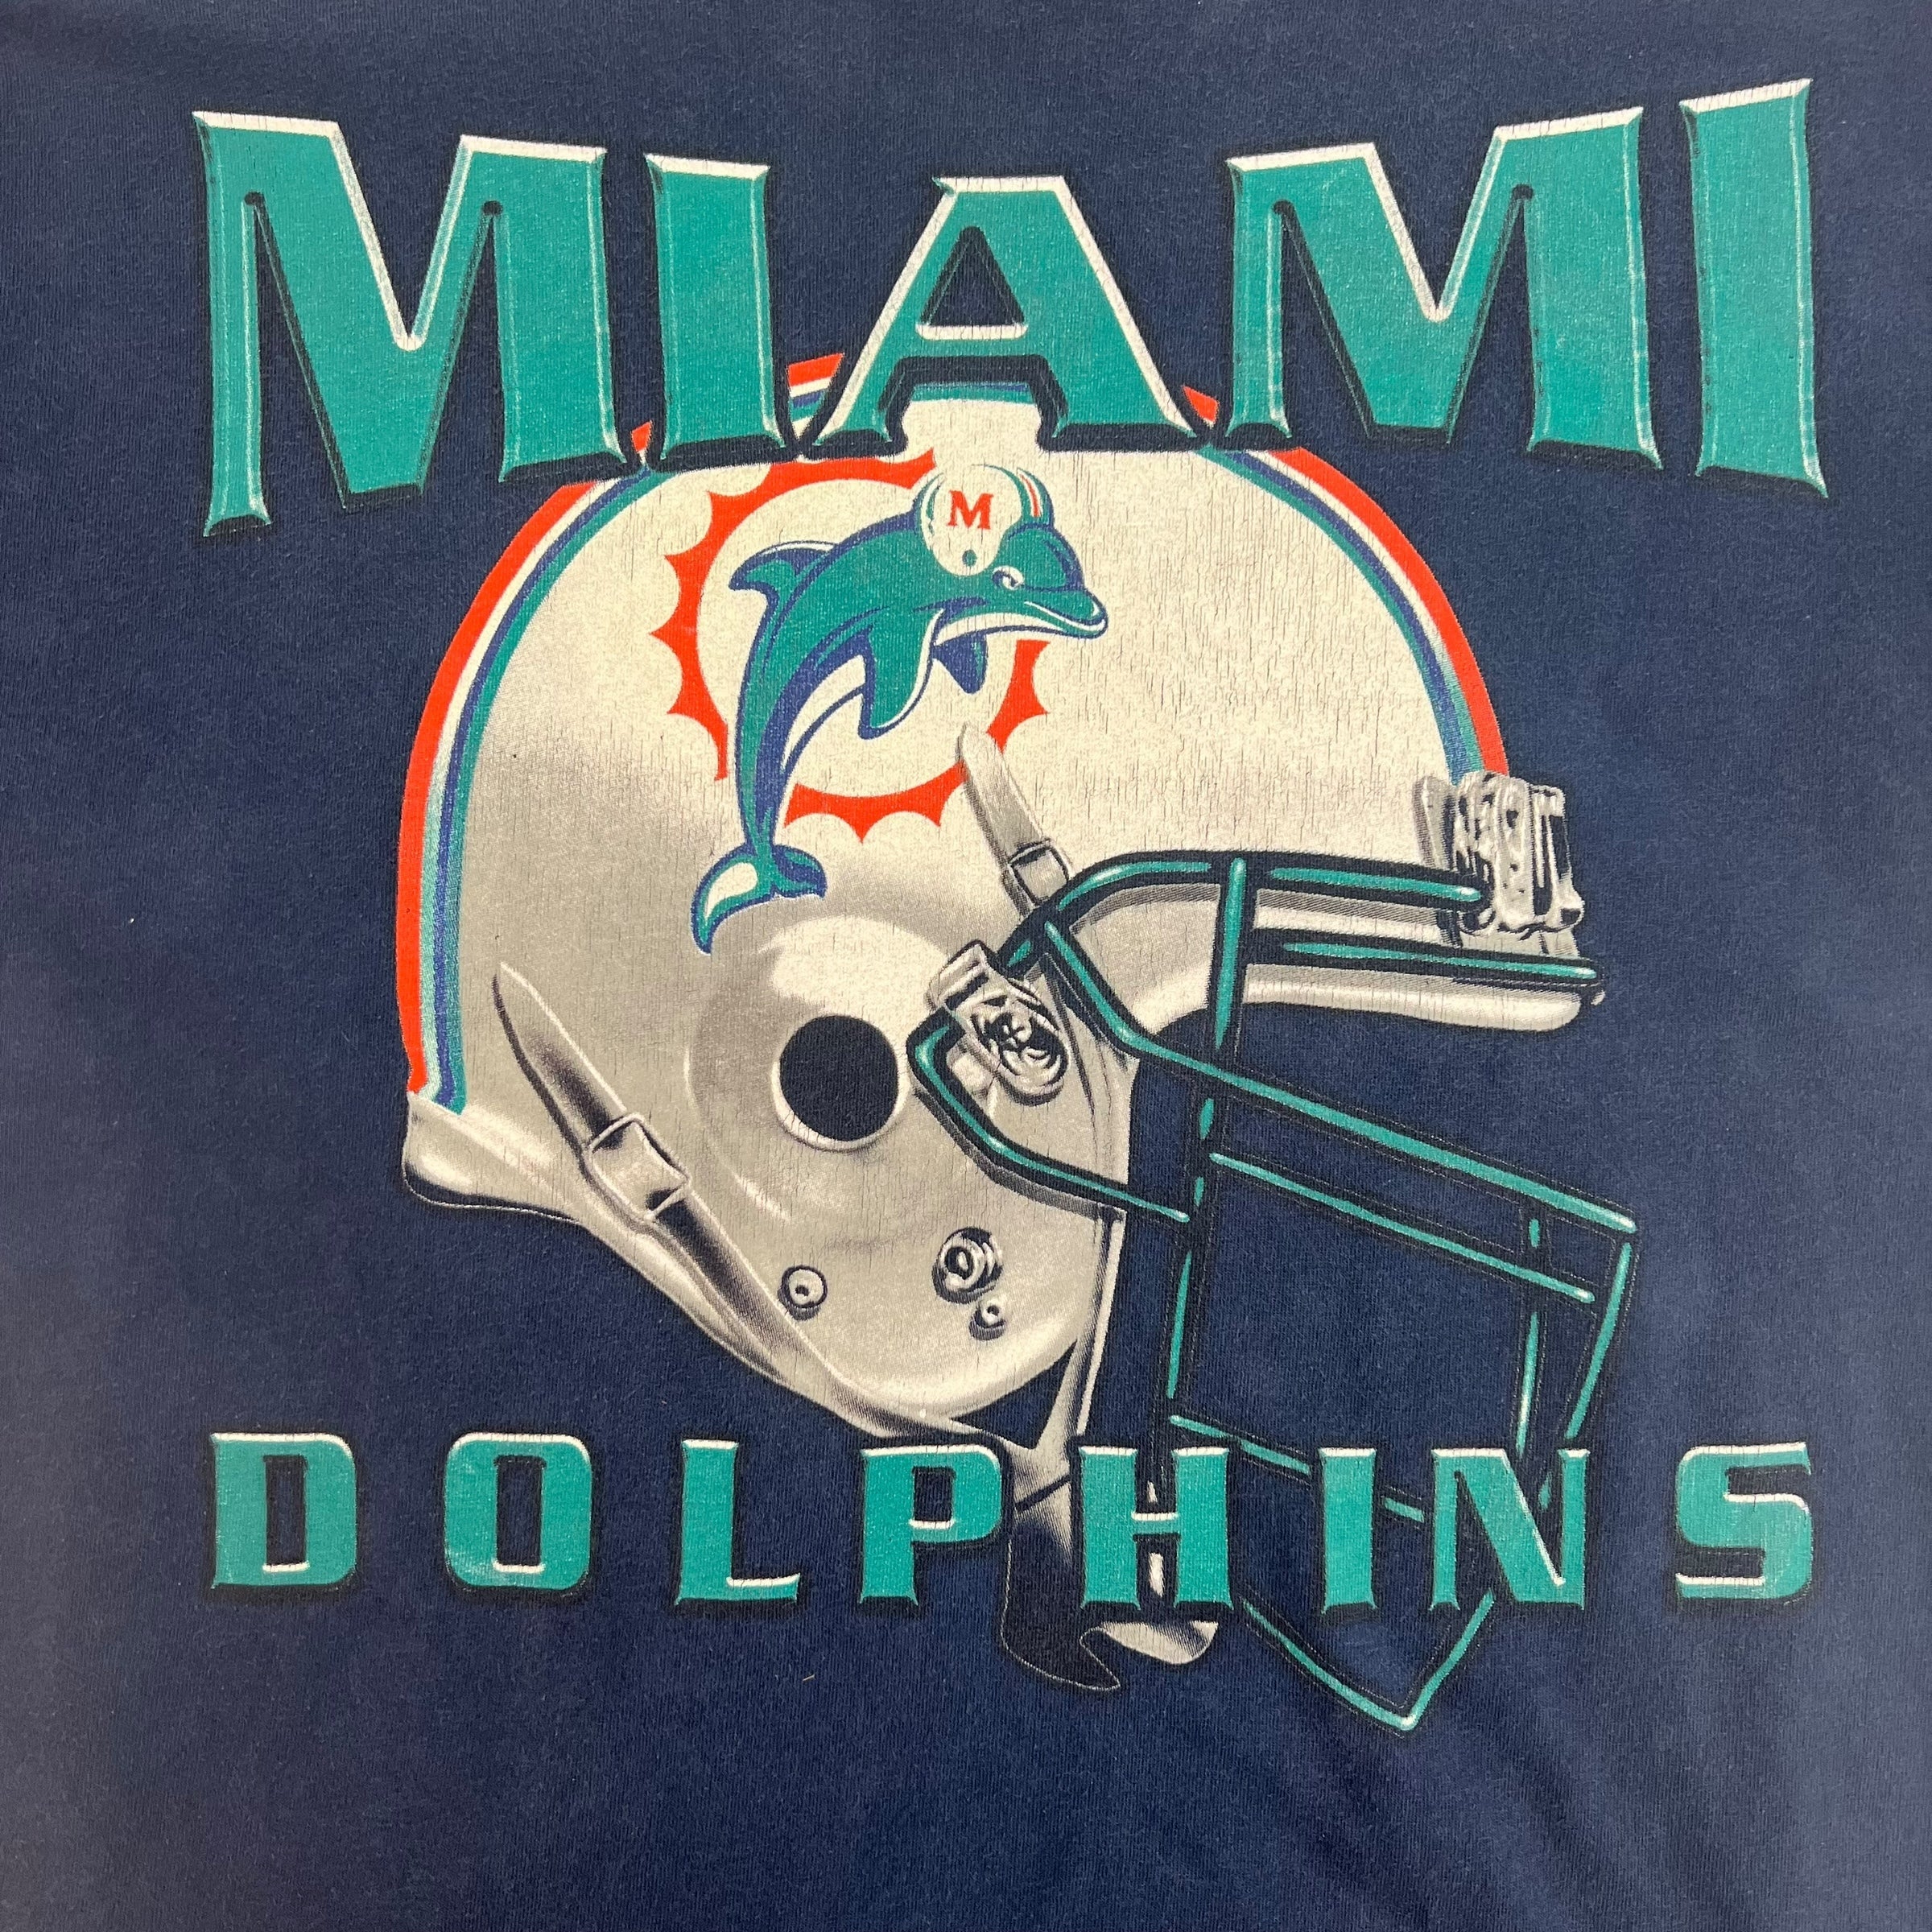 Vintage Miami Dolphins Helmet Tee Navy